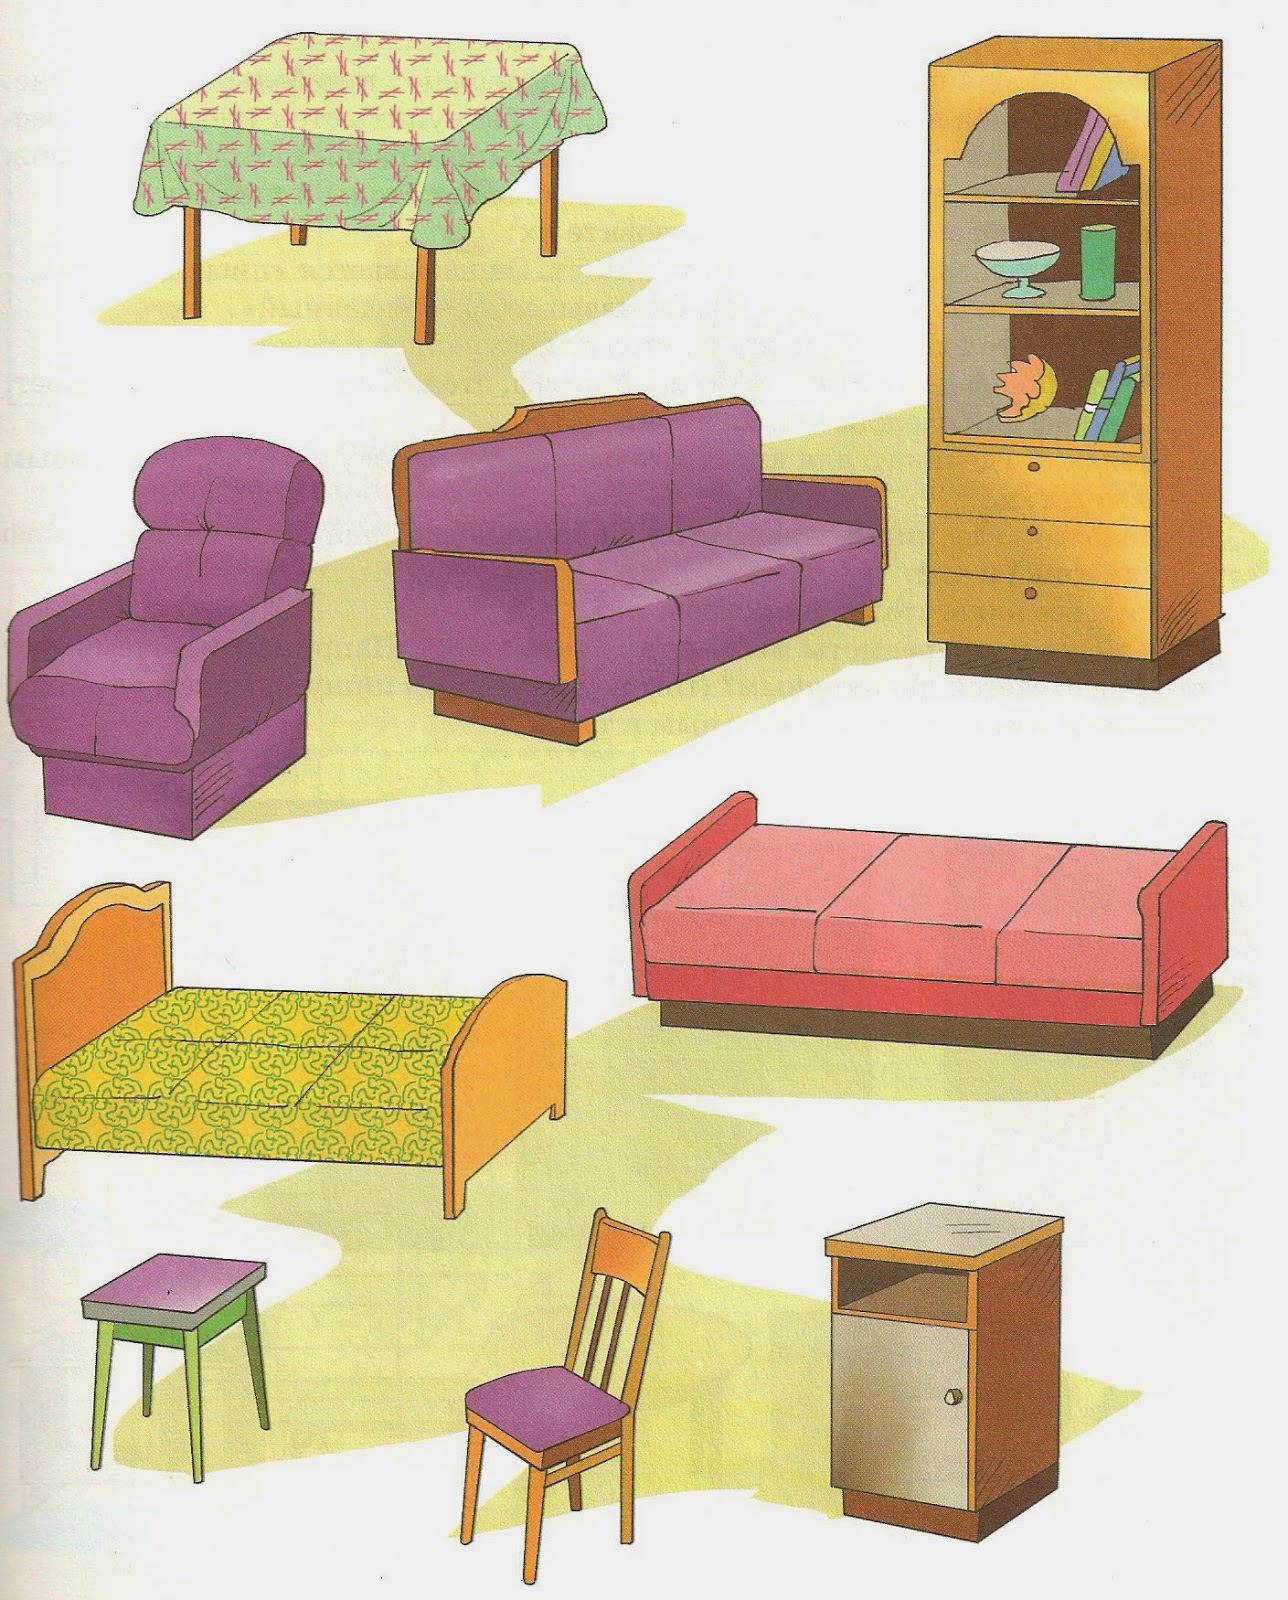 Мебельны магазин игры. Мебель для дошкольников. Предметы мебели. Предметы мебели для детей. Мебель для детей средней группы.